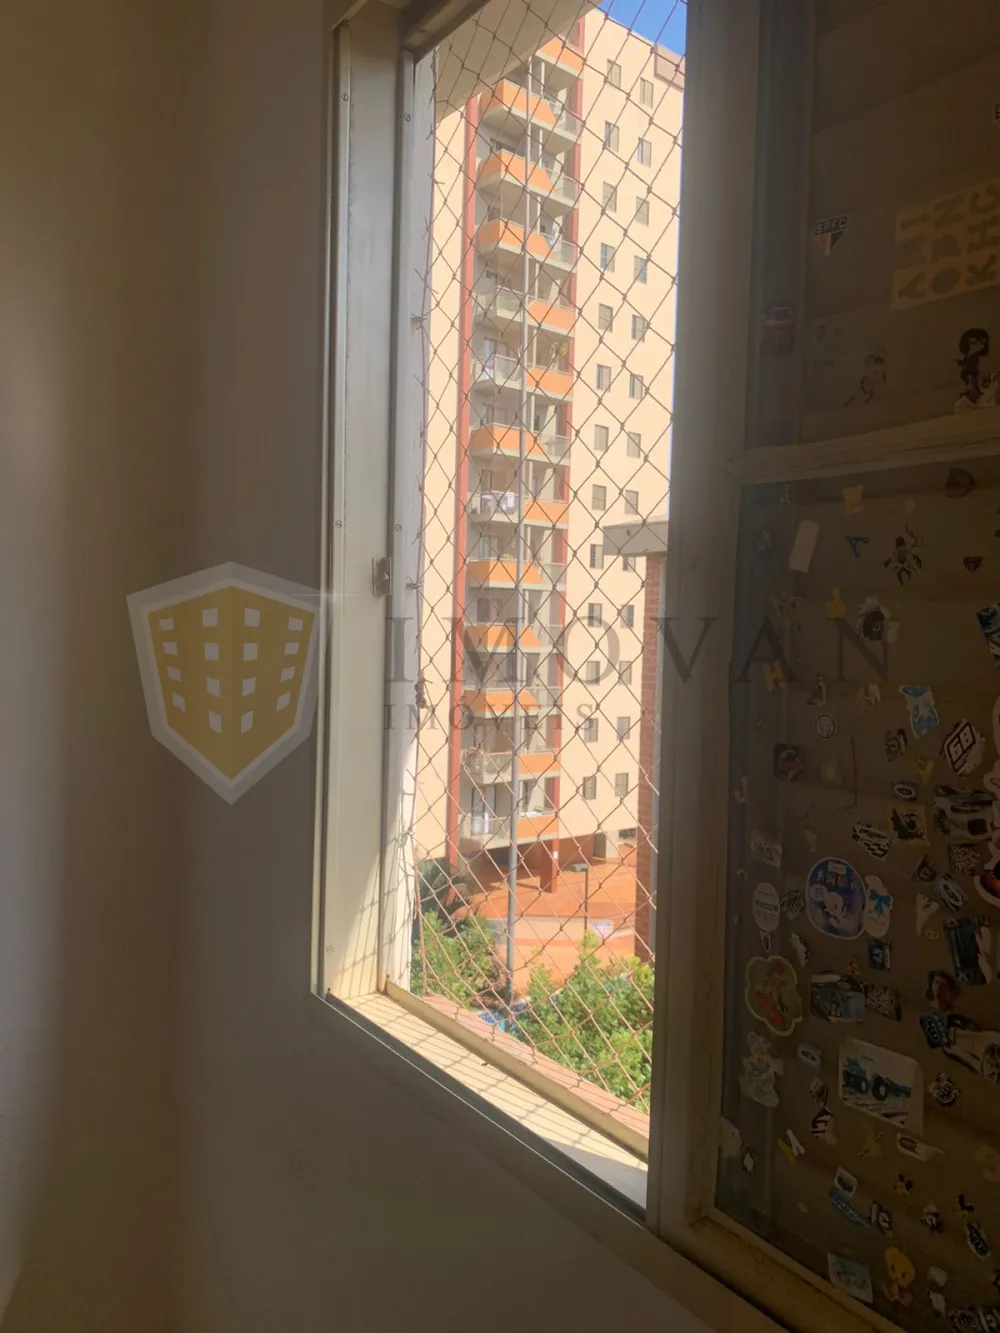 Comprar Apartamento / Padrão em Ribeirão Preto R$ 198.000,00 - Foto 13